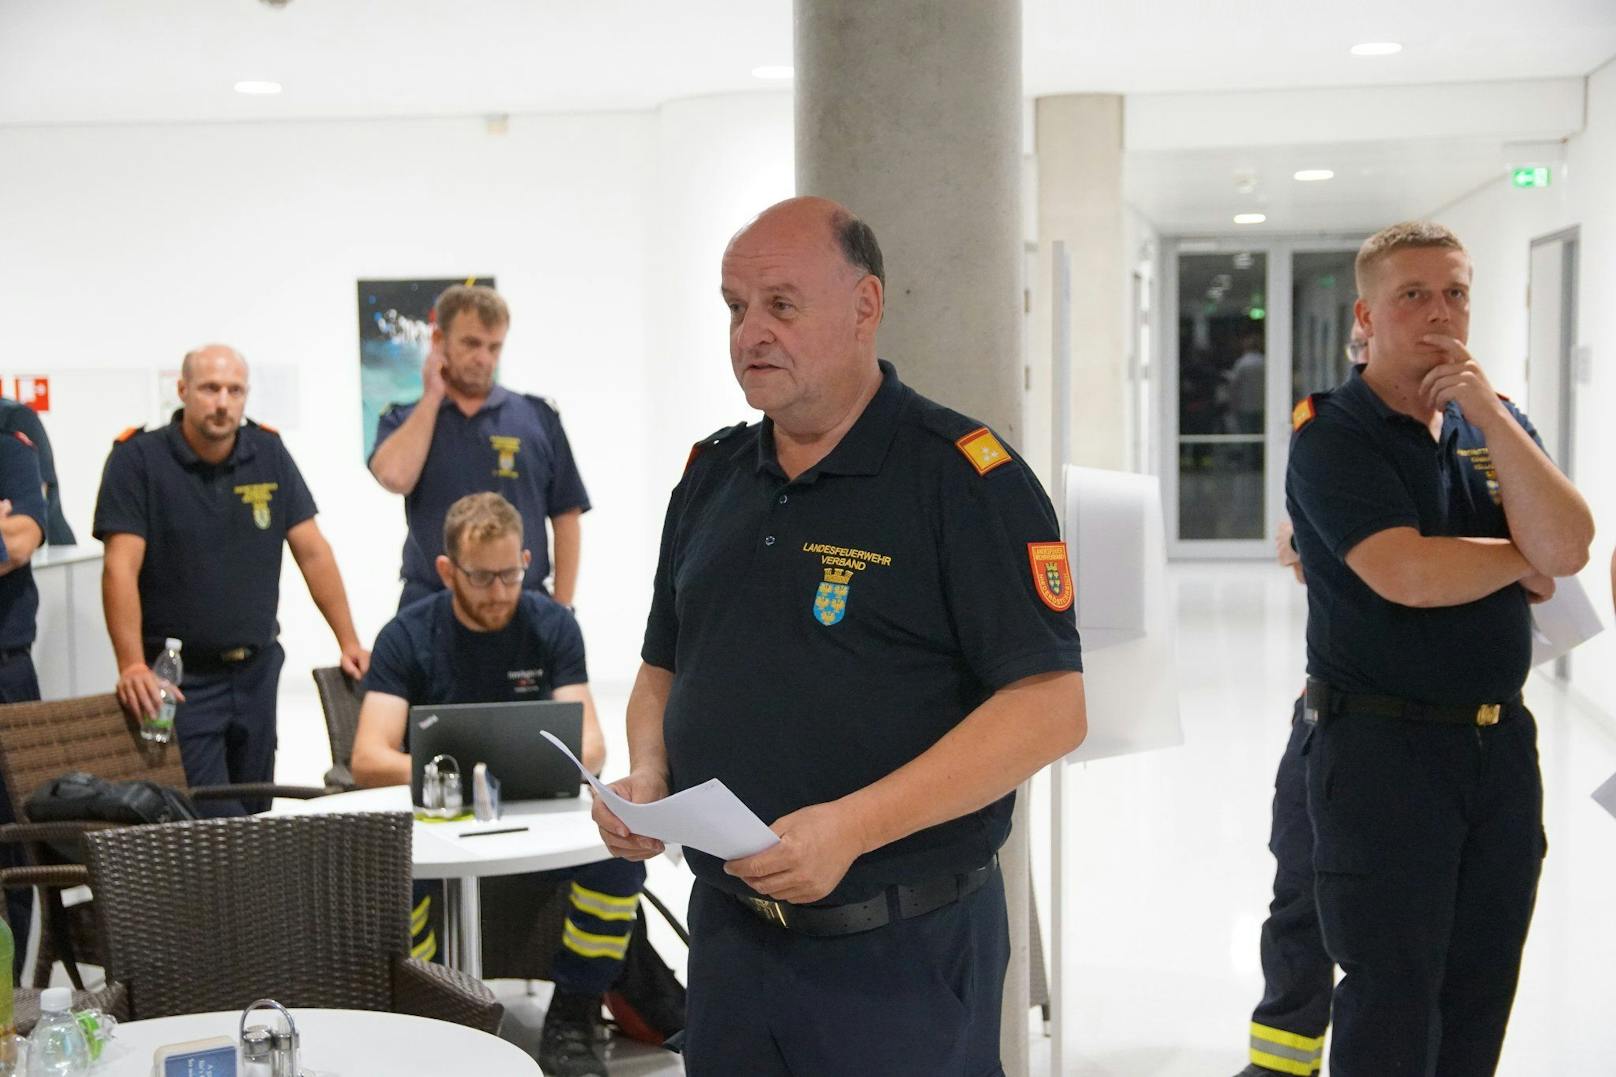 Einsatzleiter mit viel Erfahrung bei Waldbränden: Sepp Huber